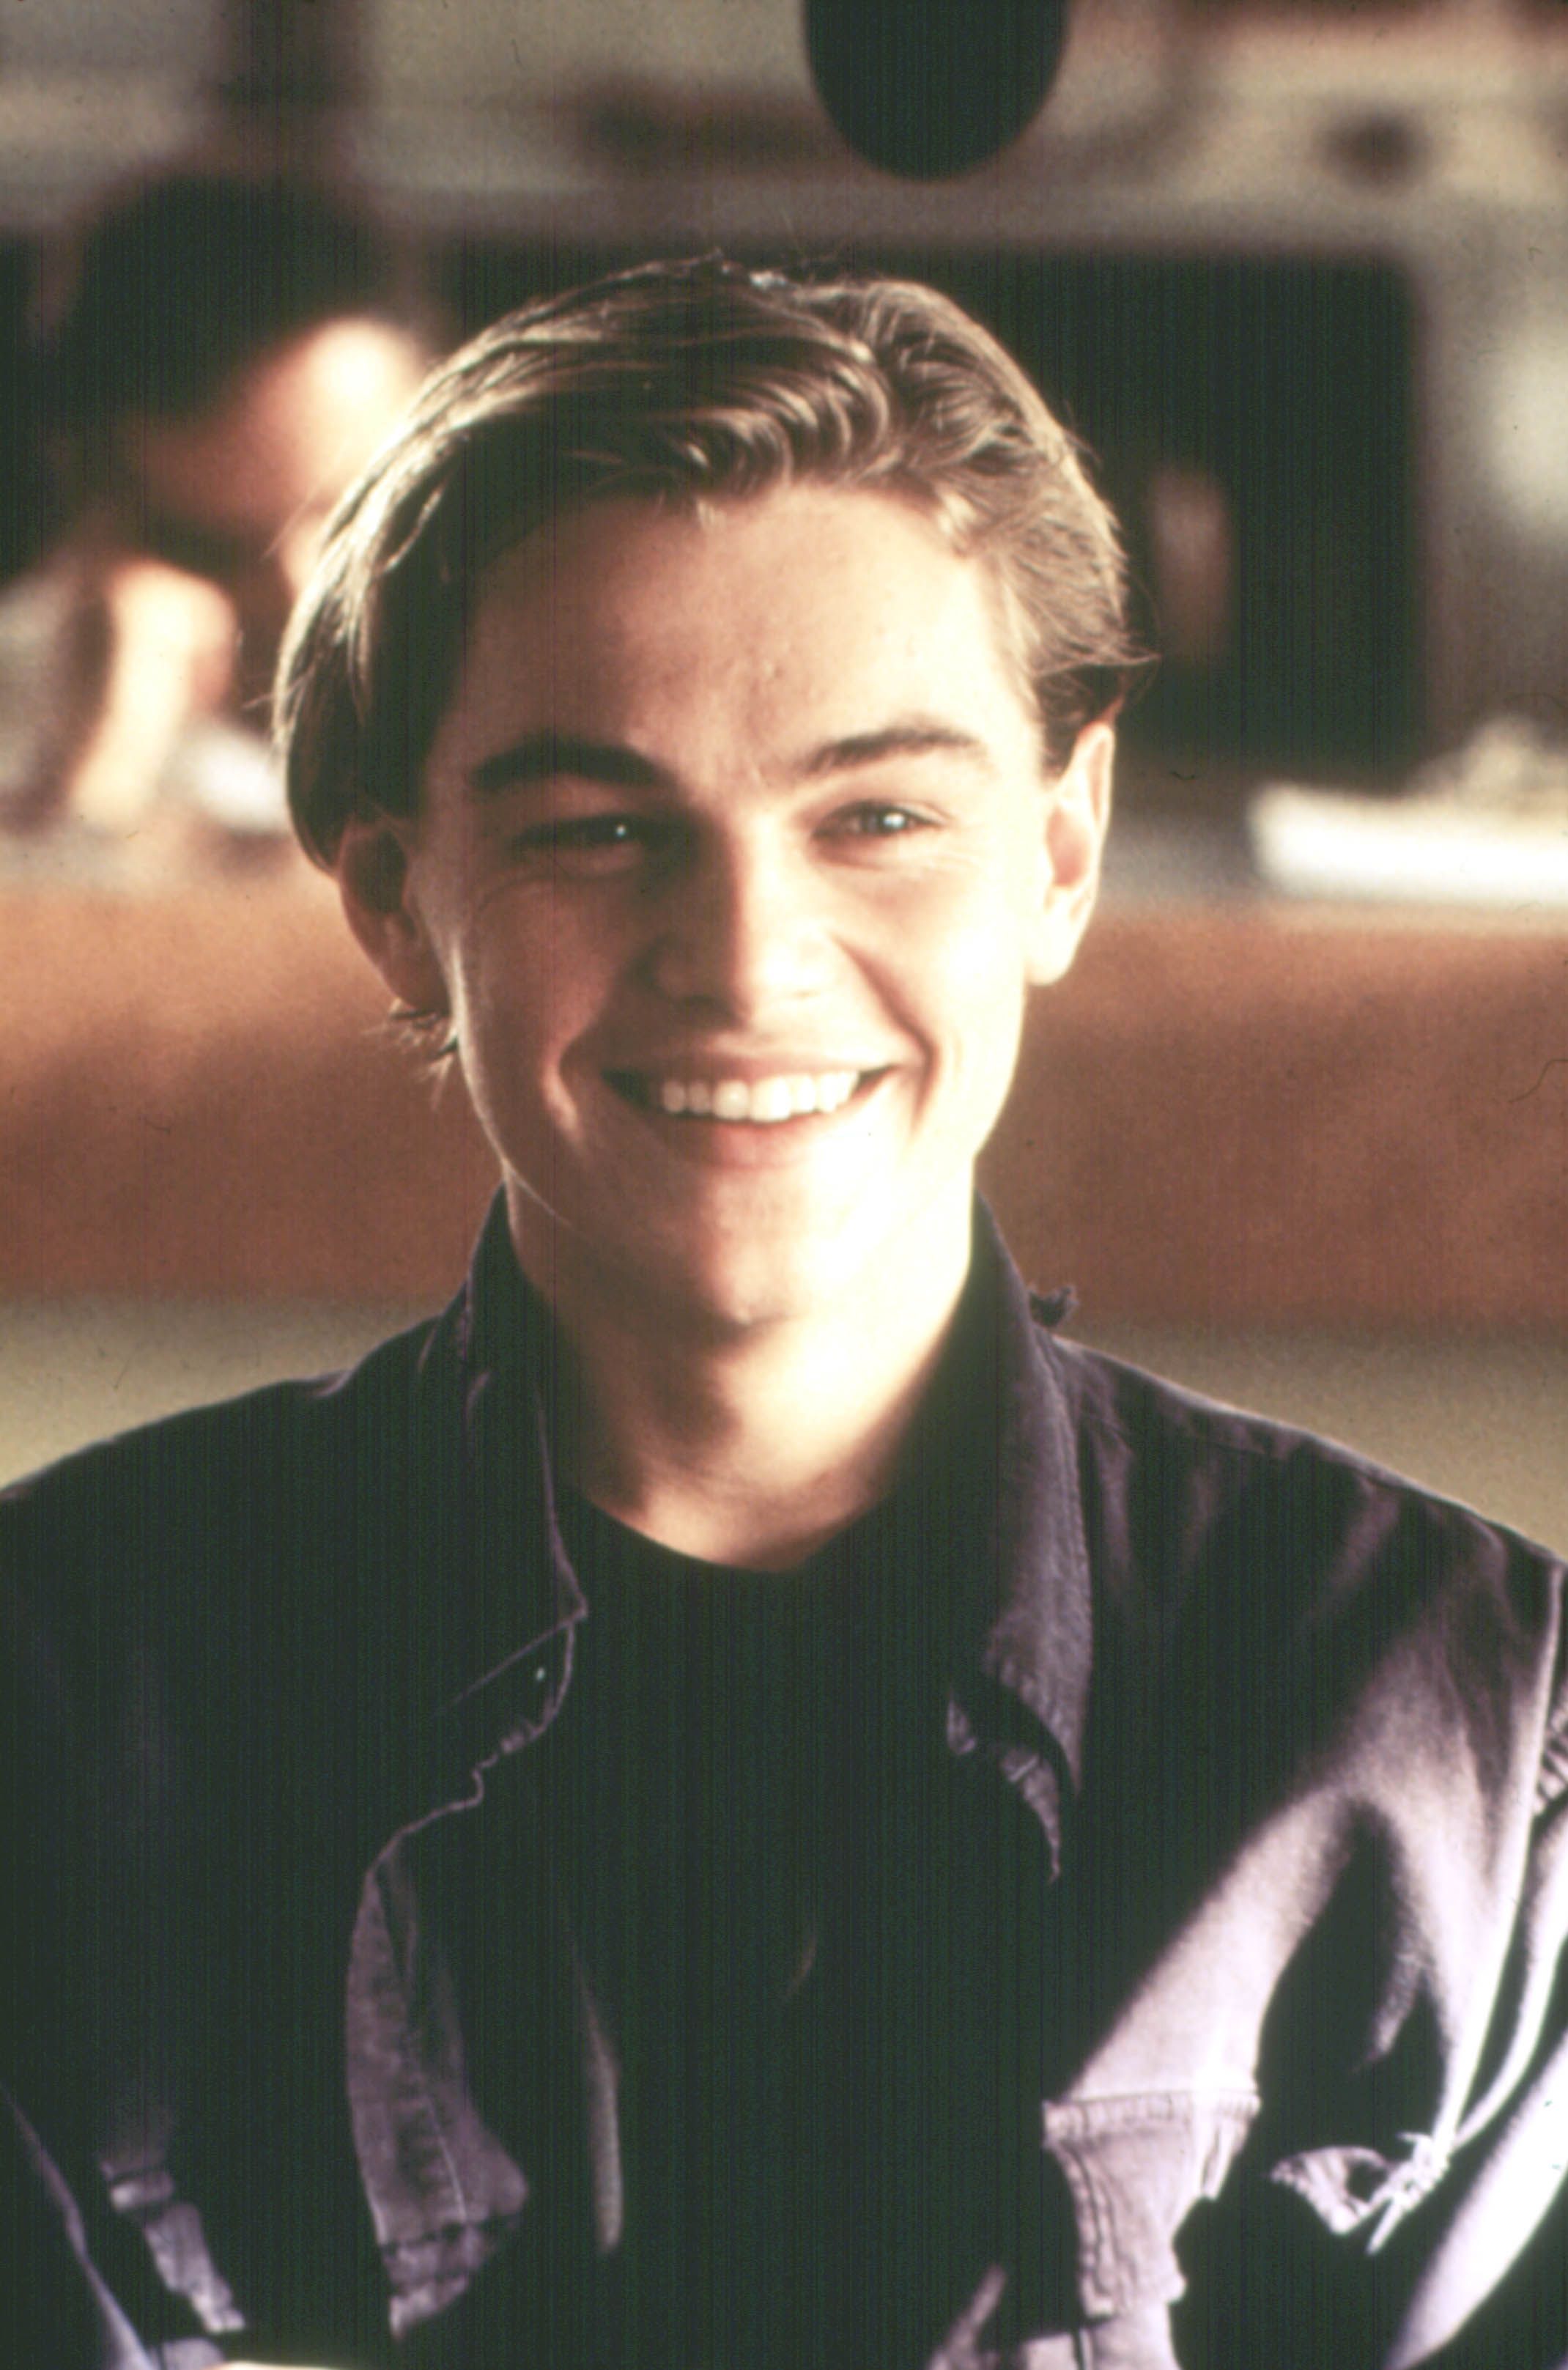 Leonardo DiCaprio nostalgic, young photo